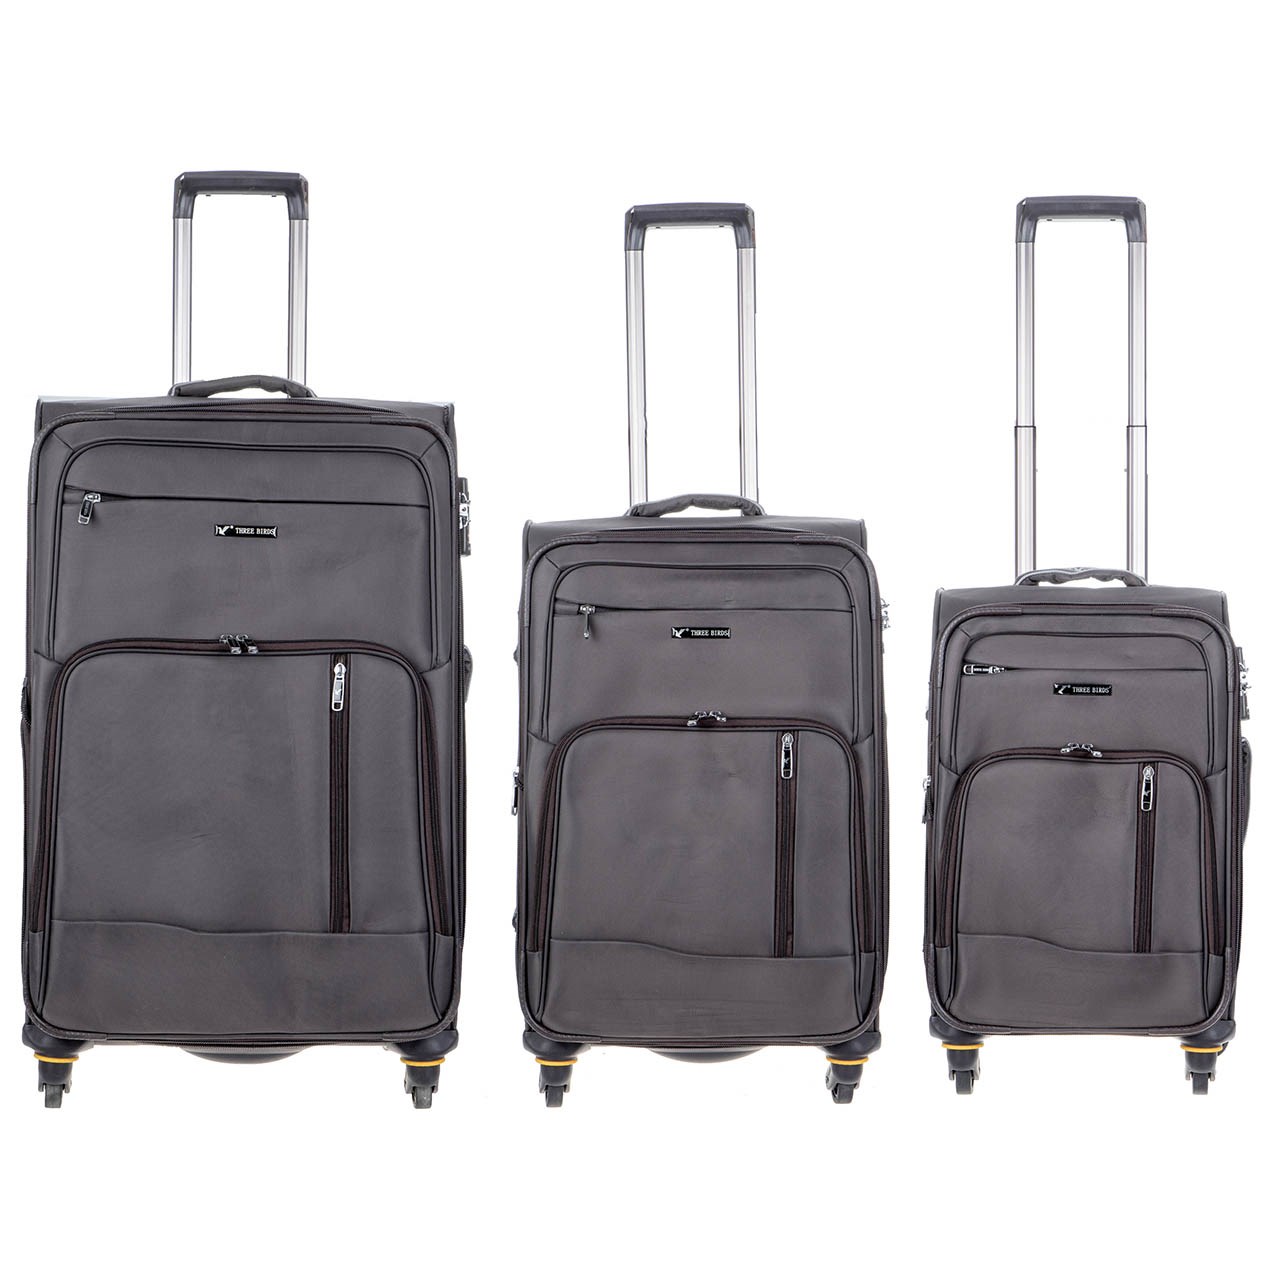 مجموعه سه عددی چمدان تری بردز مدل TB-013